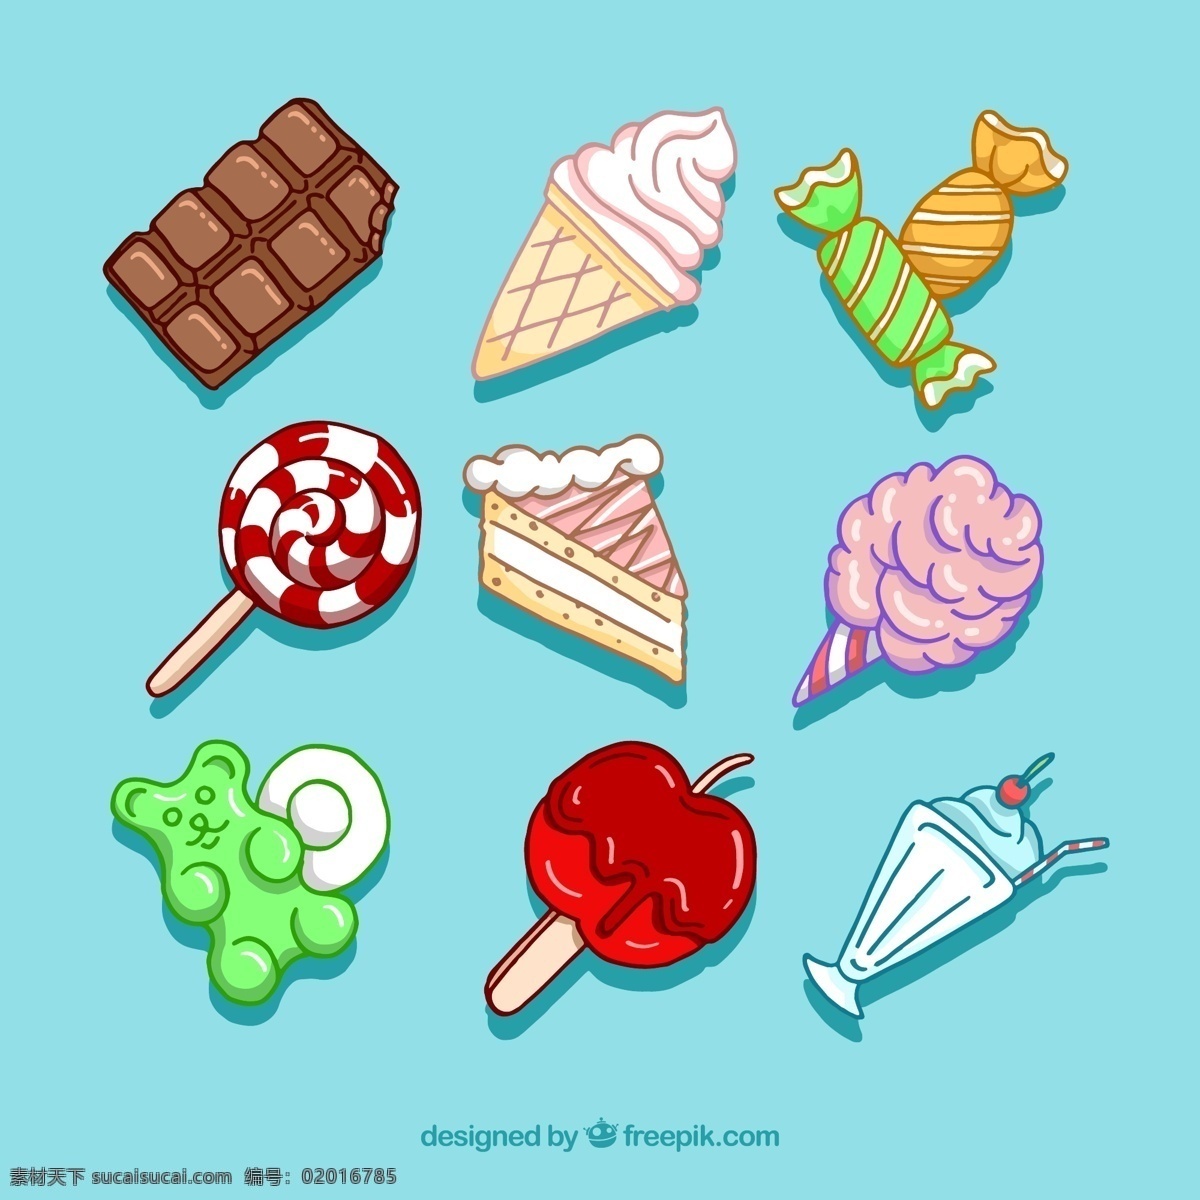 彩绘甜食 9款 彩绘 甜食 起来 棒棒糖 苹果 蛋糕 美食 生活百科 餐饮美食